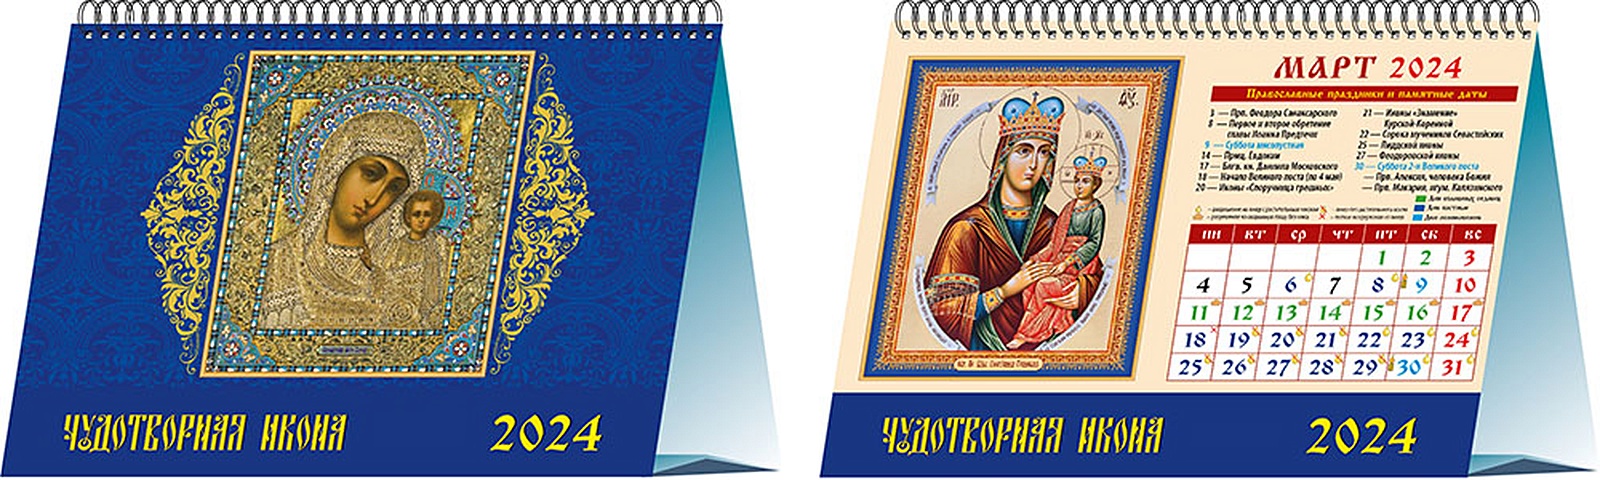 Календарь 2024г 200*140 Чудотворная икона настольный, домик календарь на 2024 год чудотворная икона